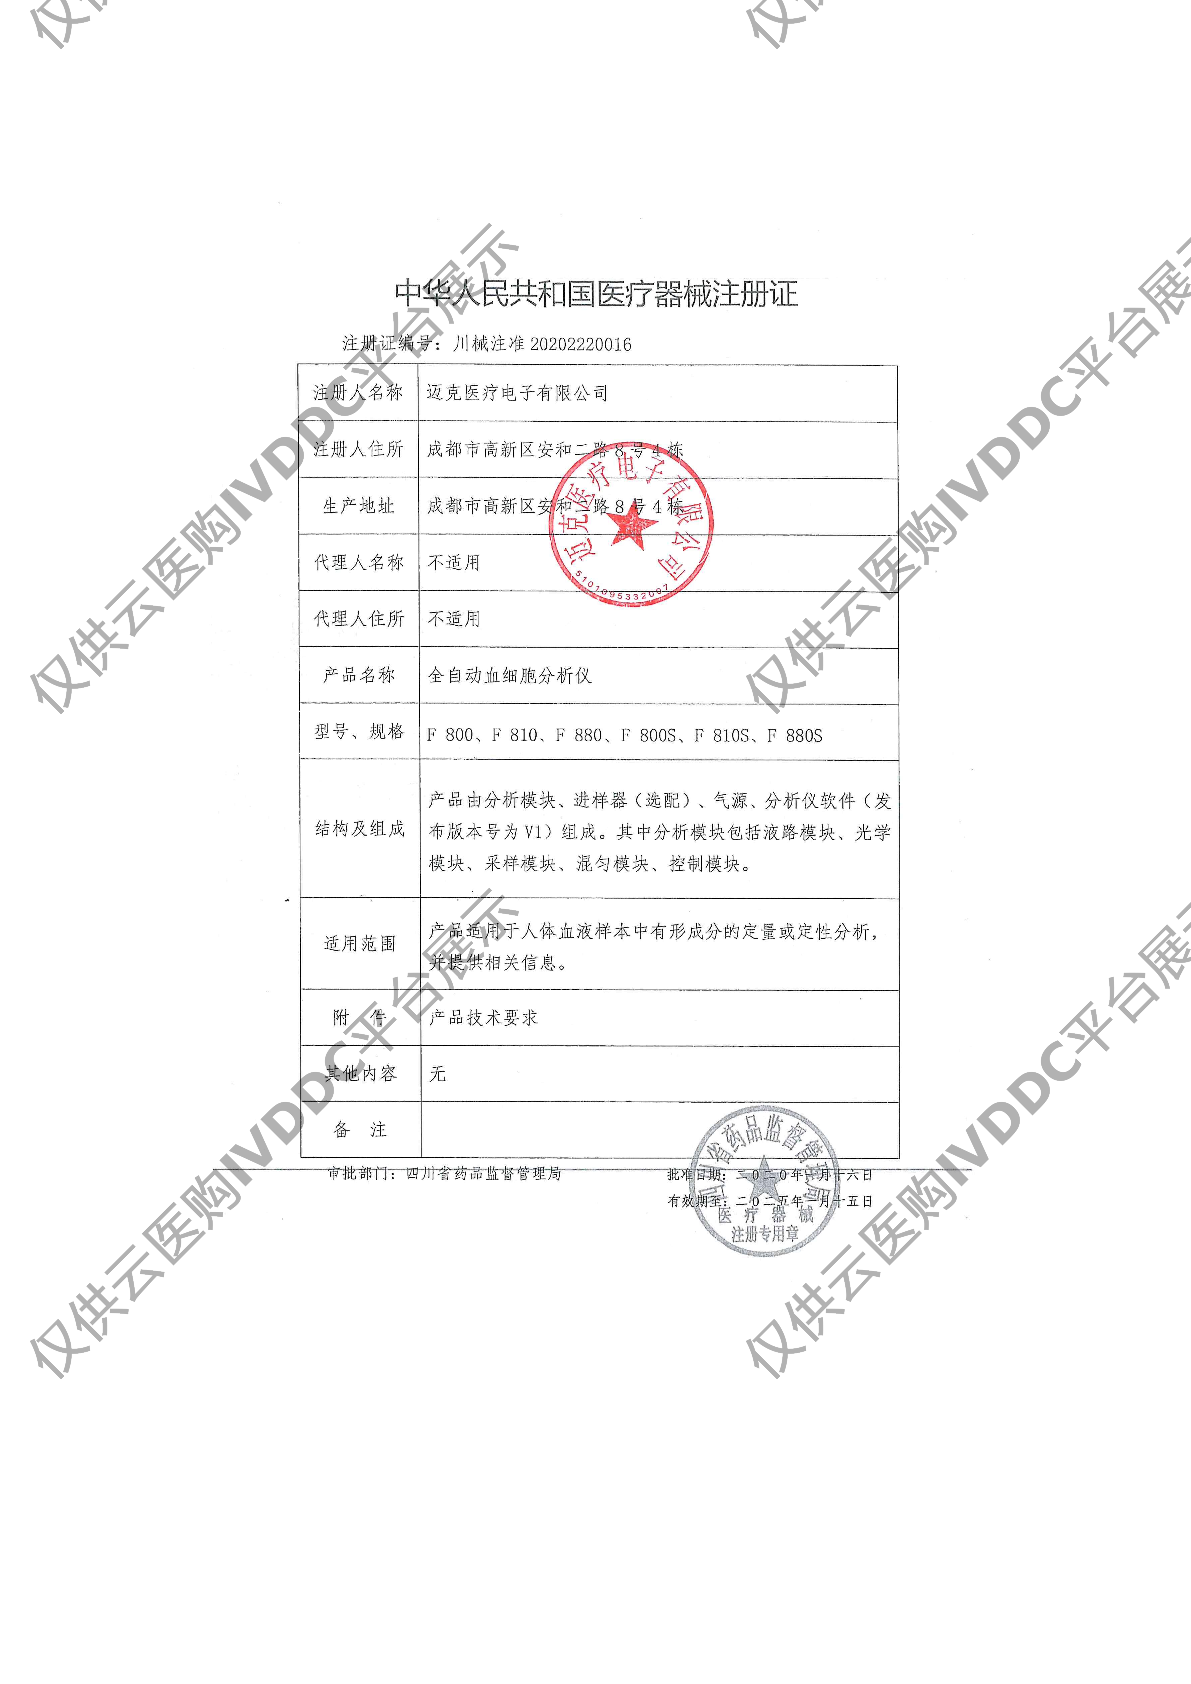 【迈克】全自动血细胞分析仪 F800注册证